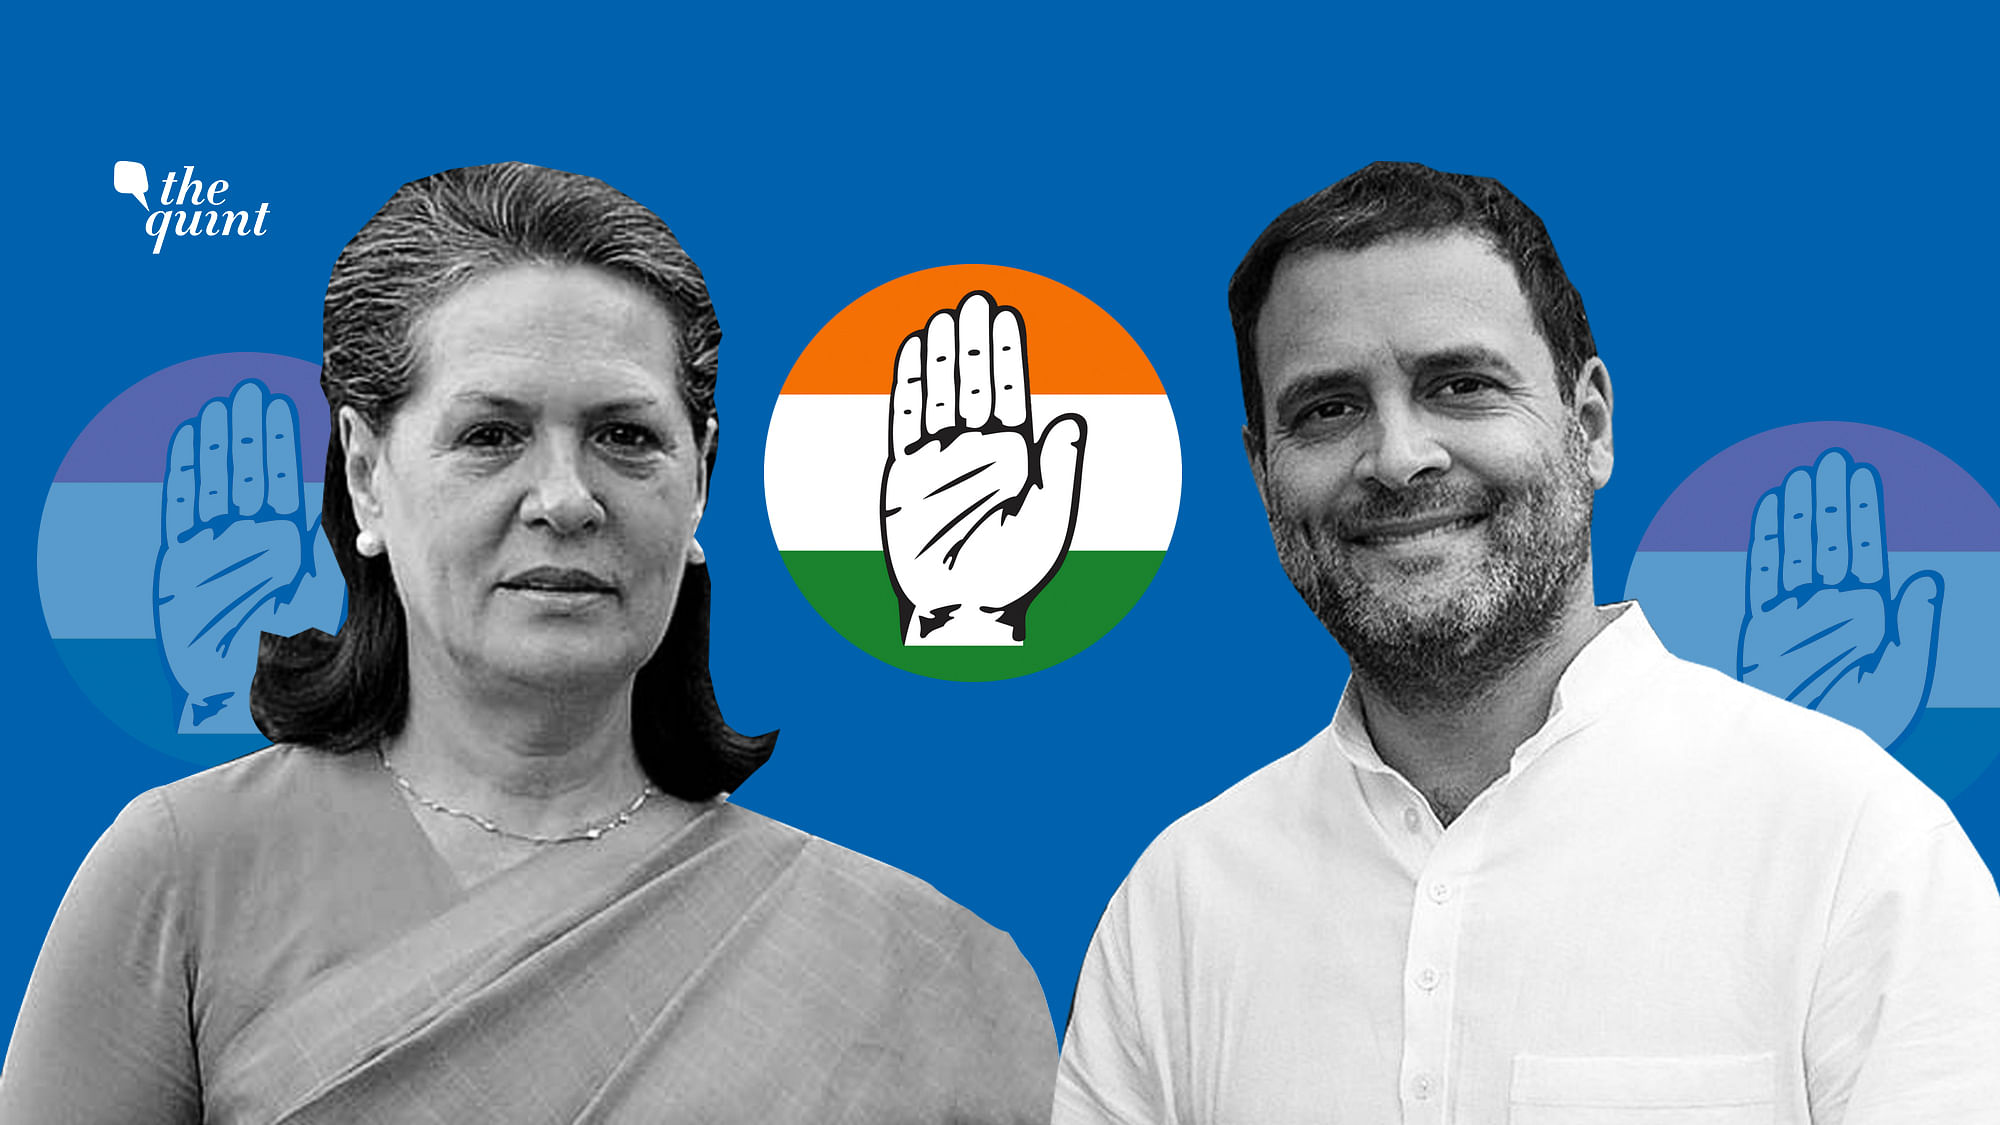 Image of Sonia Gandhi and Rahul Gandhi used for representational purposes.